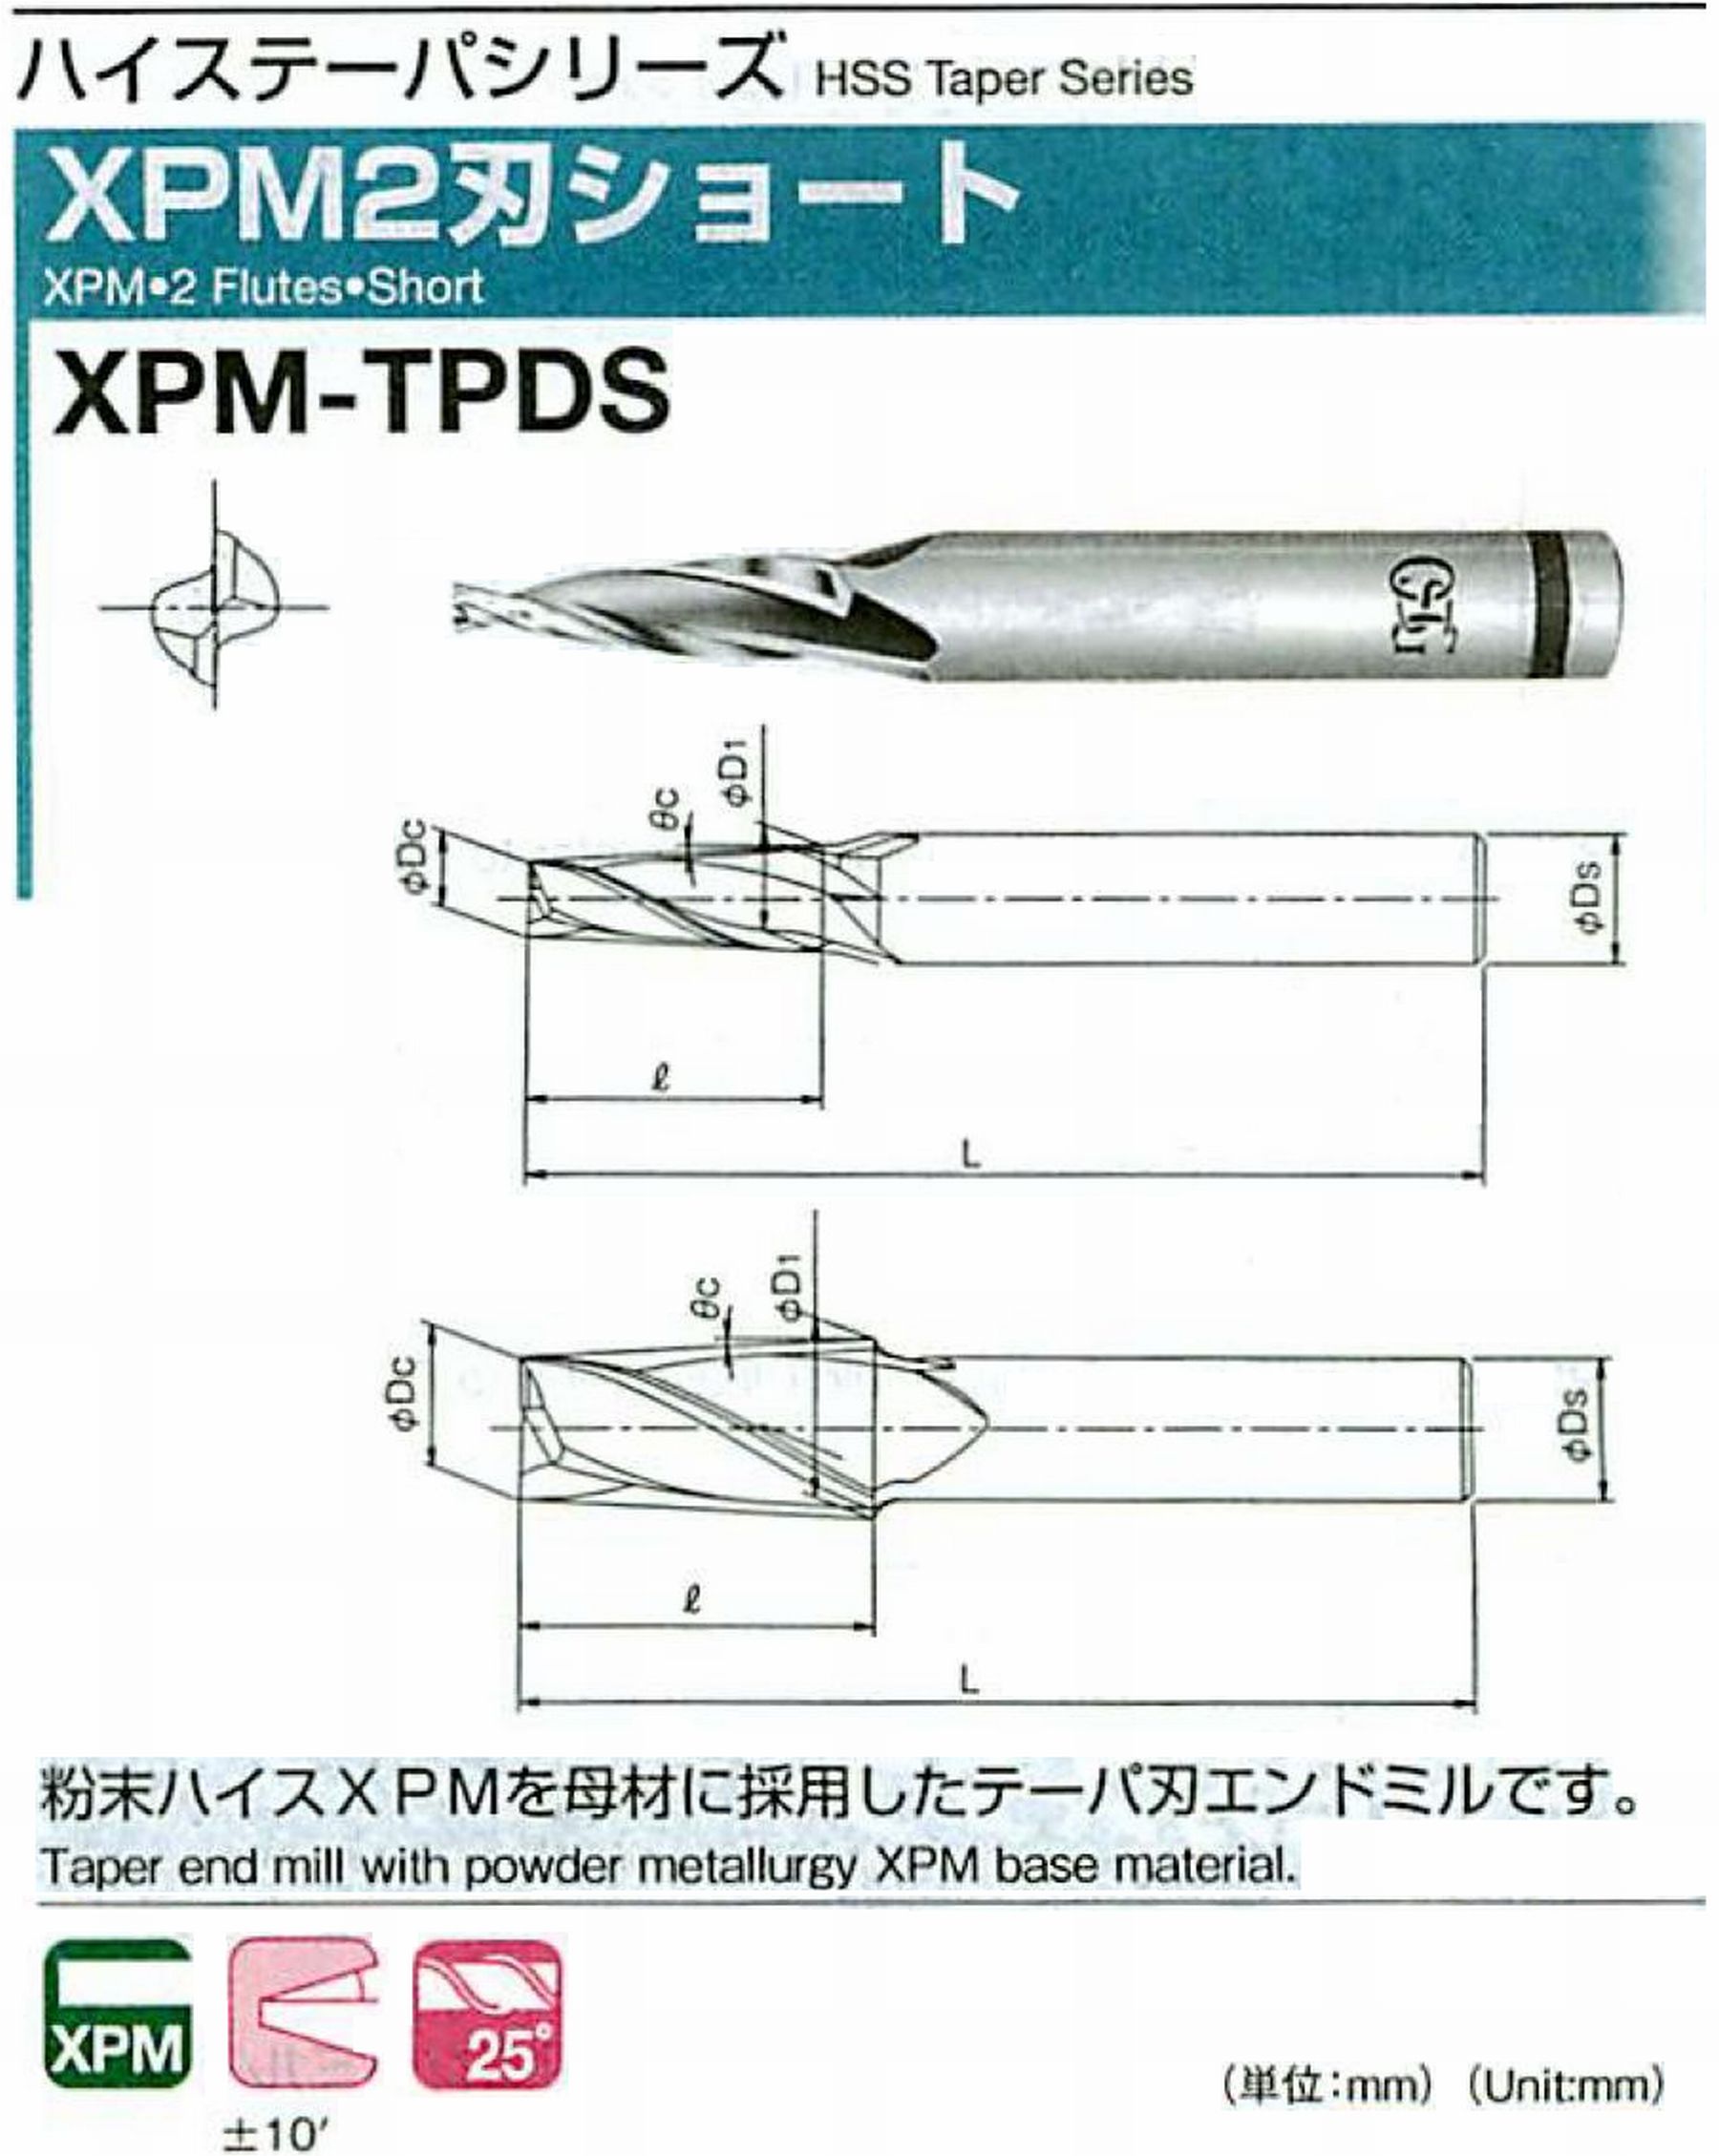 オーエスジー/OSG XPM2刃ショート XPM-TPDS 外径×刃部テーパ半角2.5×2.5° 全長62 刃長18 シャンク径6mm 大端径4.07